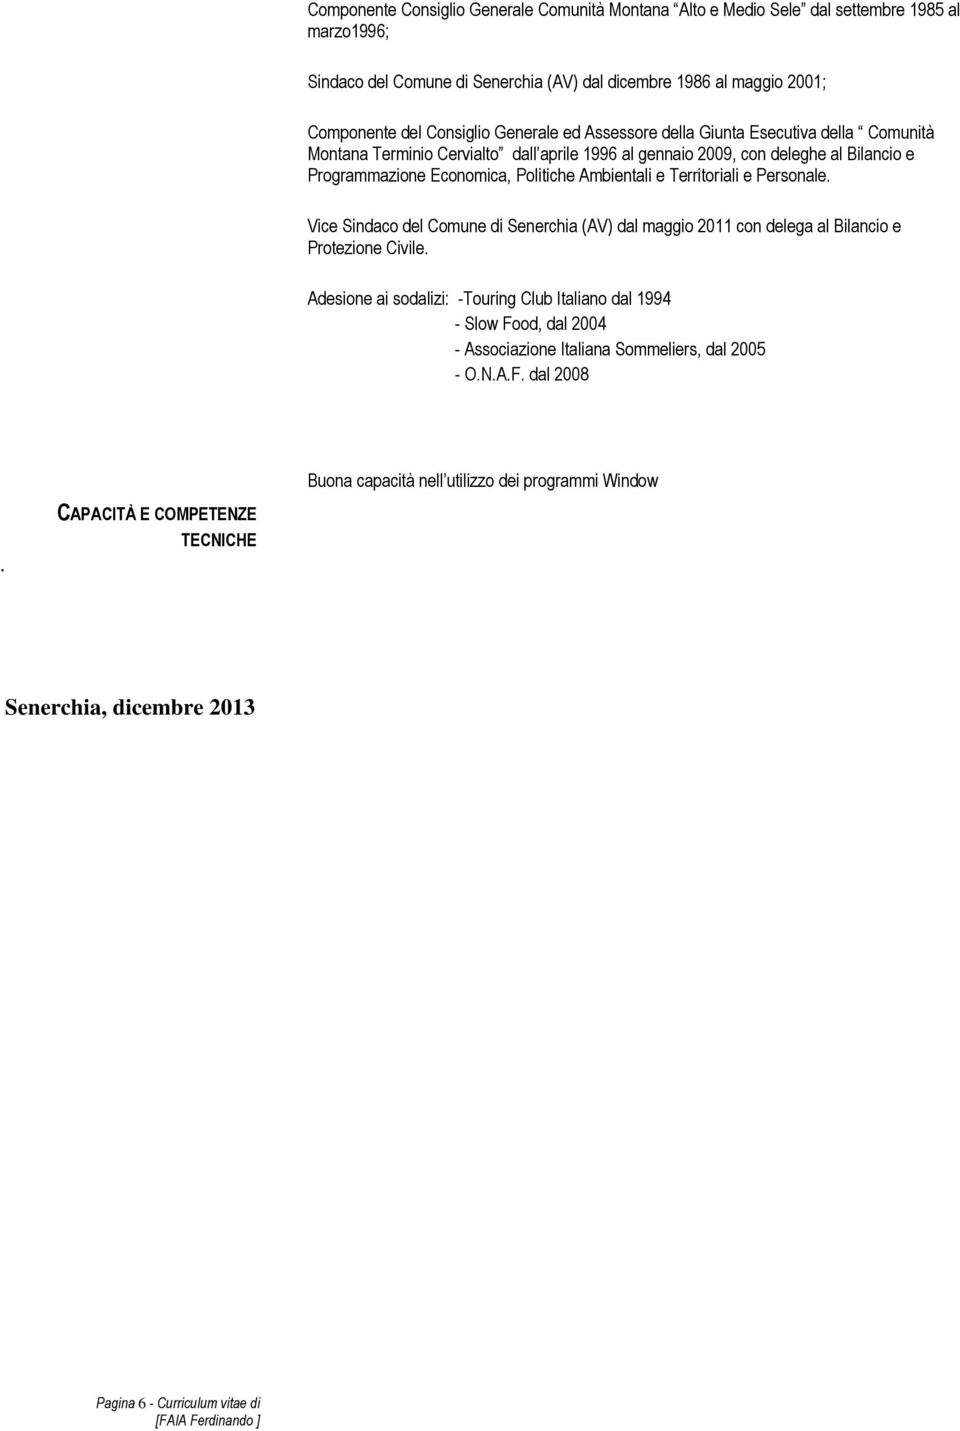 Territoriali e Personale. Vice Sindaco del Comune di Senerchia (AV) dal maggio 2011 con delega al Bilancio e Protezione Civile.